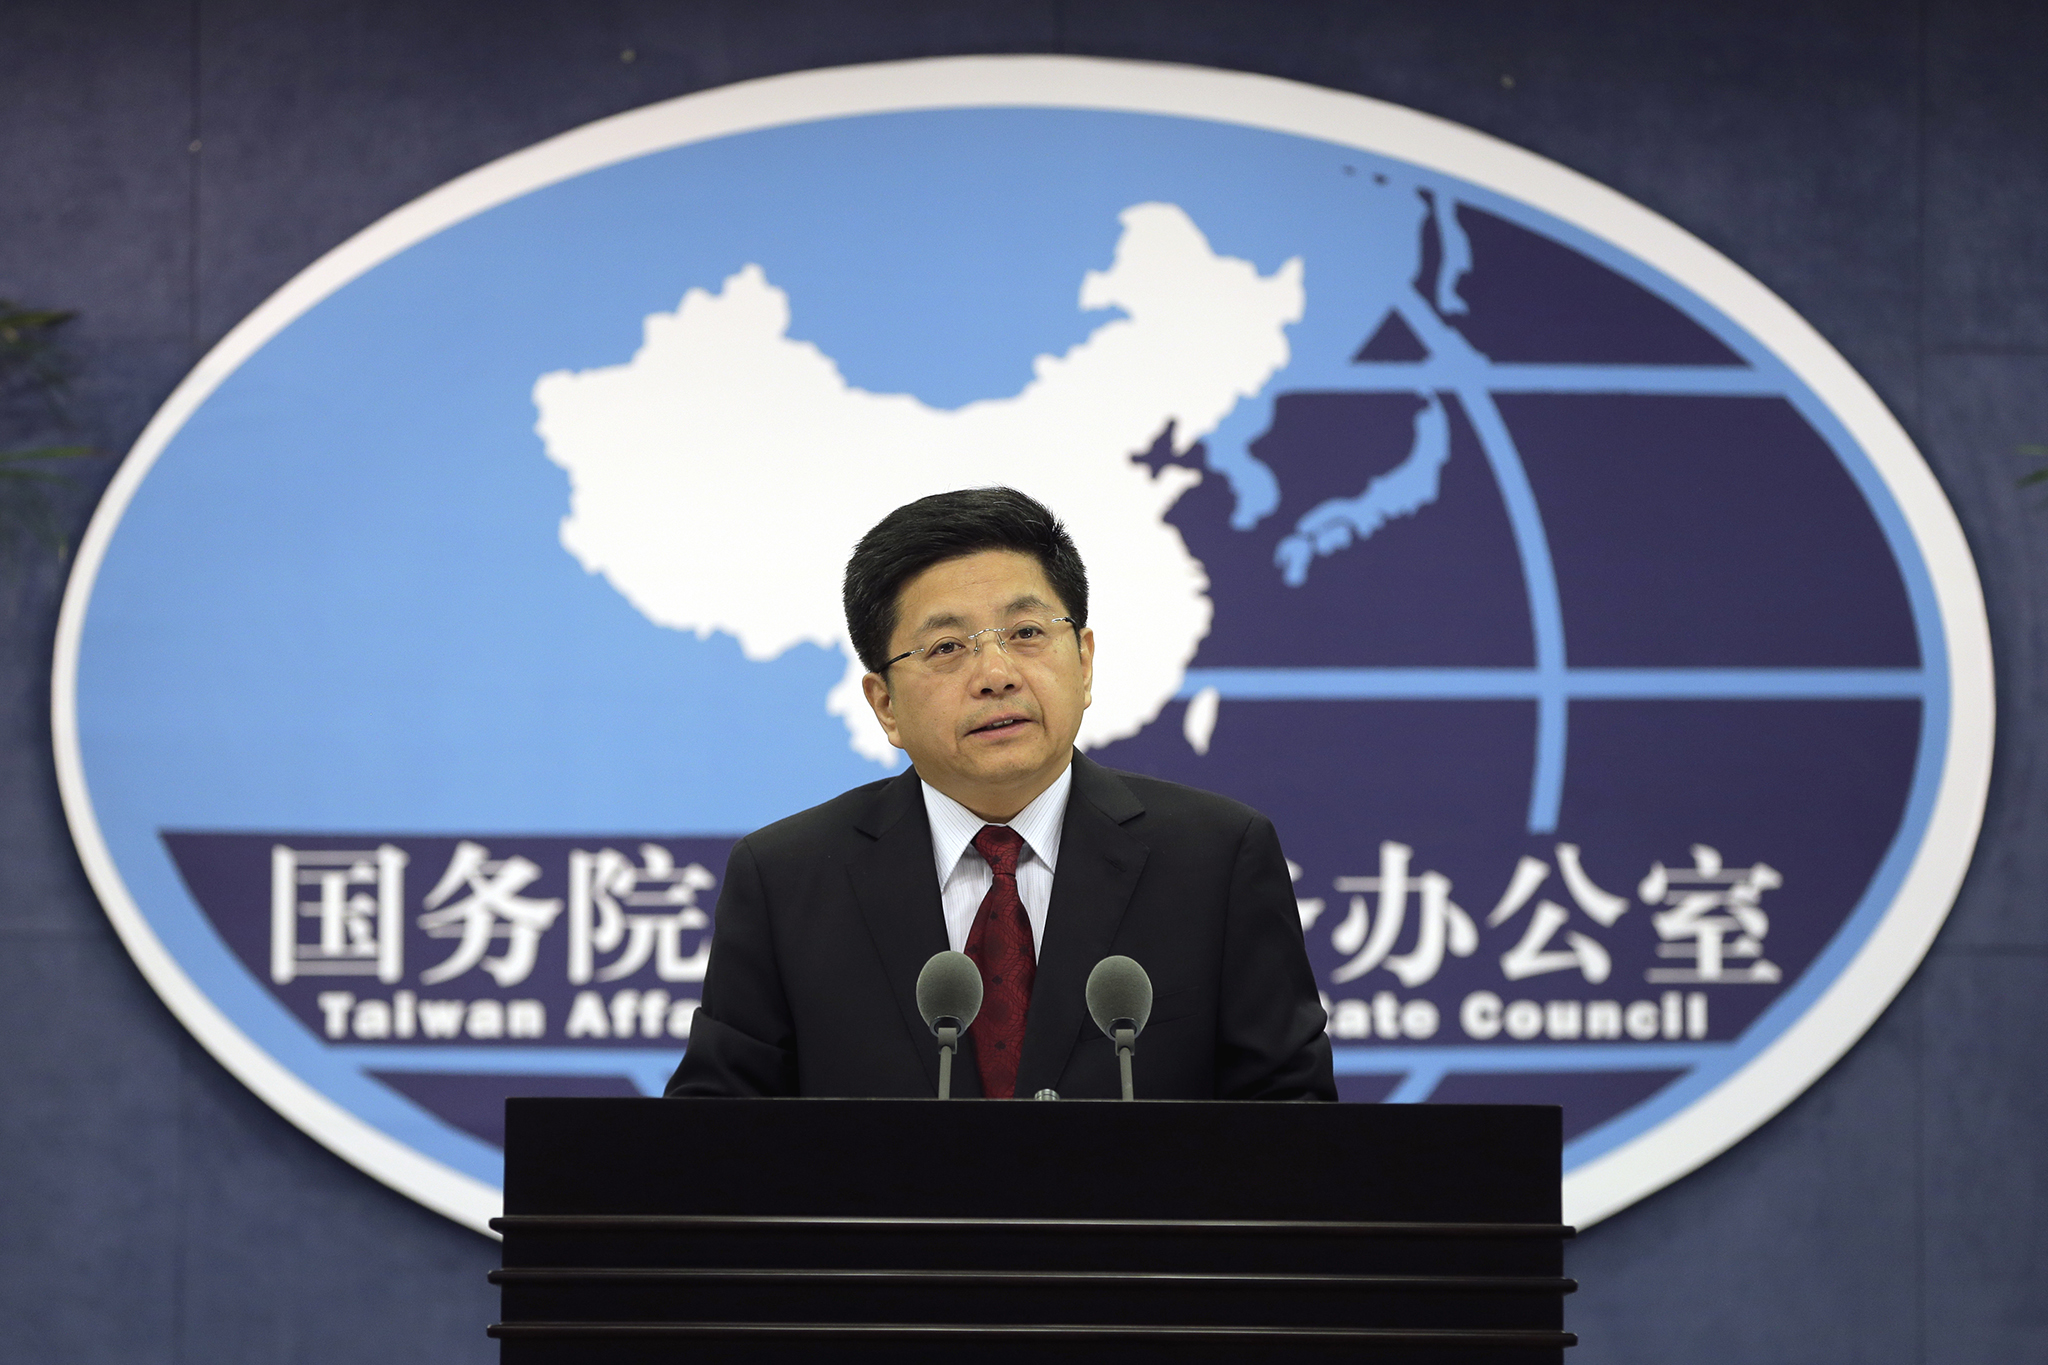 Taiwan : Pequim não quer que figuras políticas obstruam reunificação